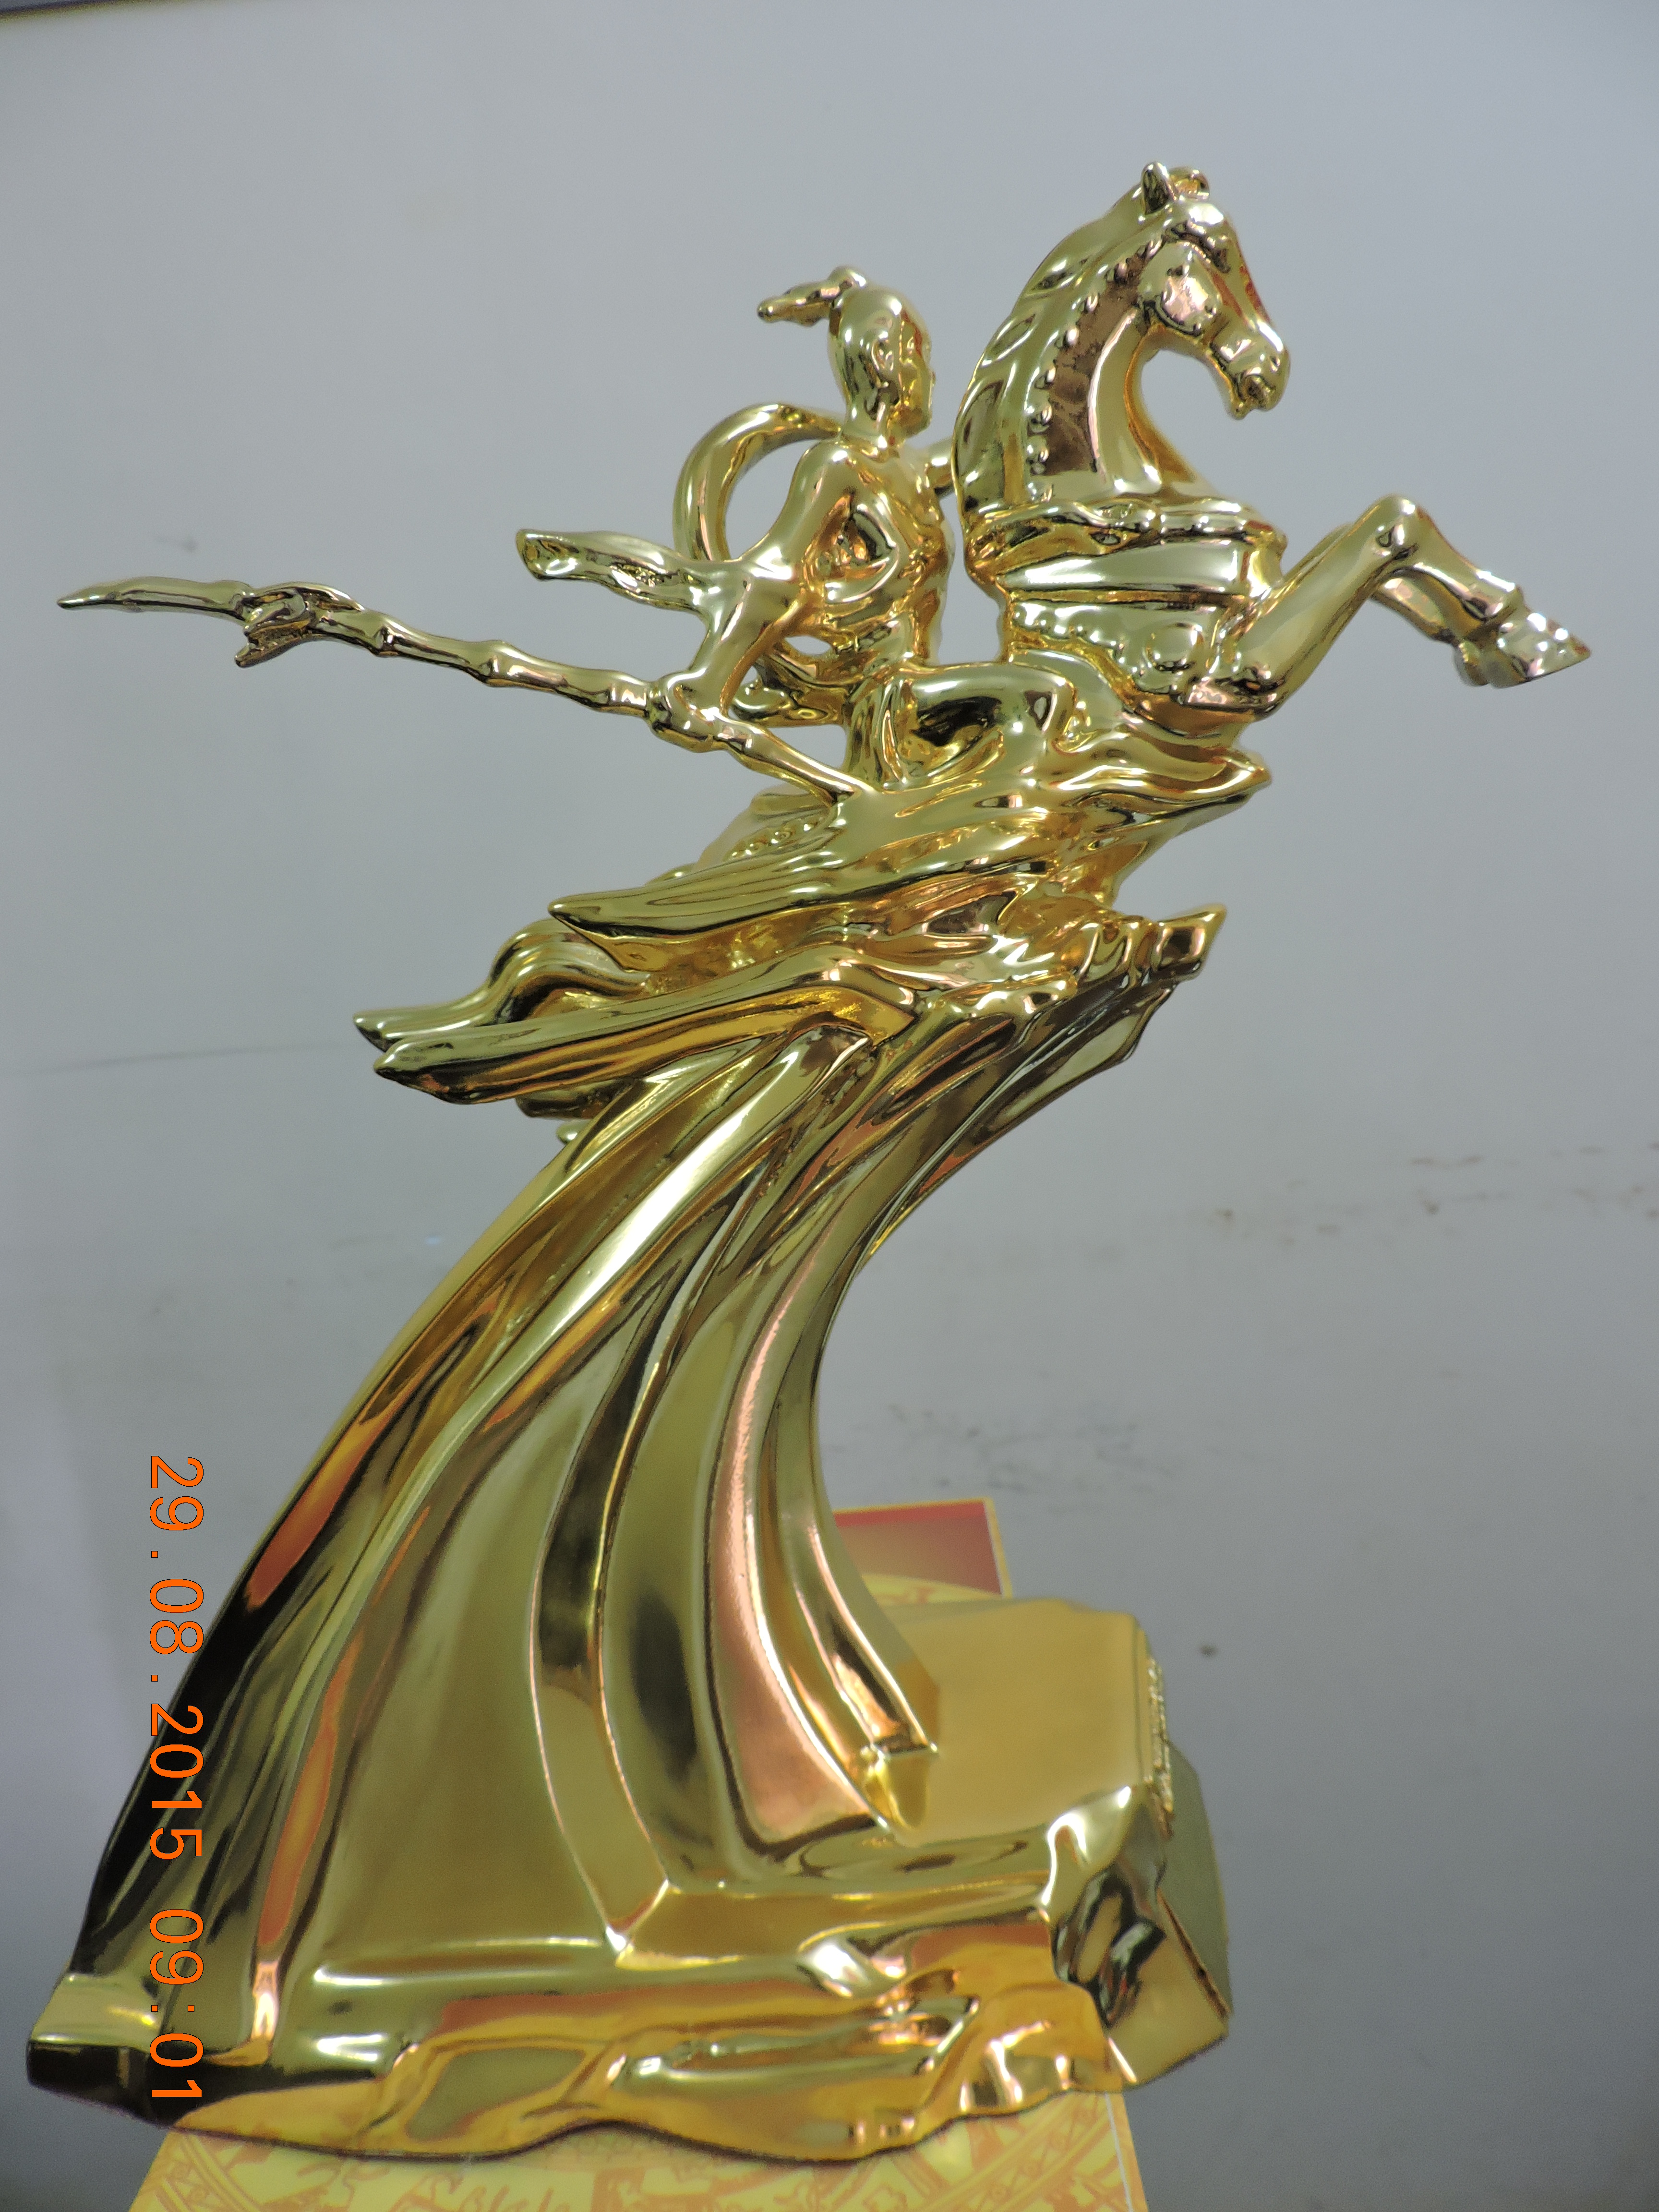  Tổng công ty Sông Gianh vinh dự nhận “Tượng vàng Thánh Gióng” trong Chương trình Vinh quang Việt Nam 2015